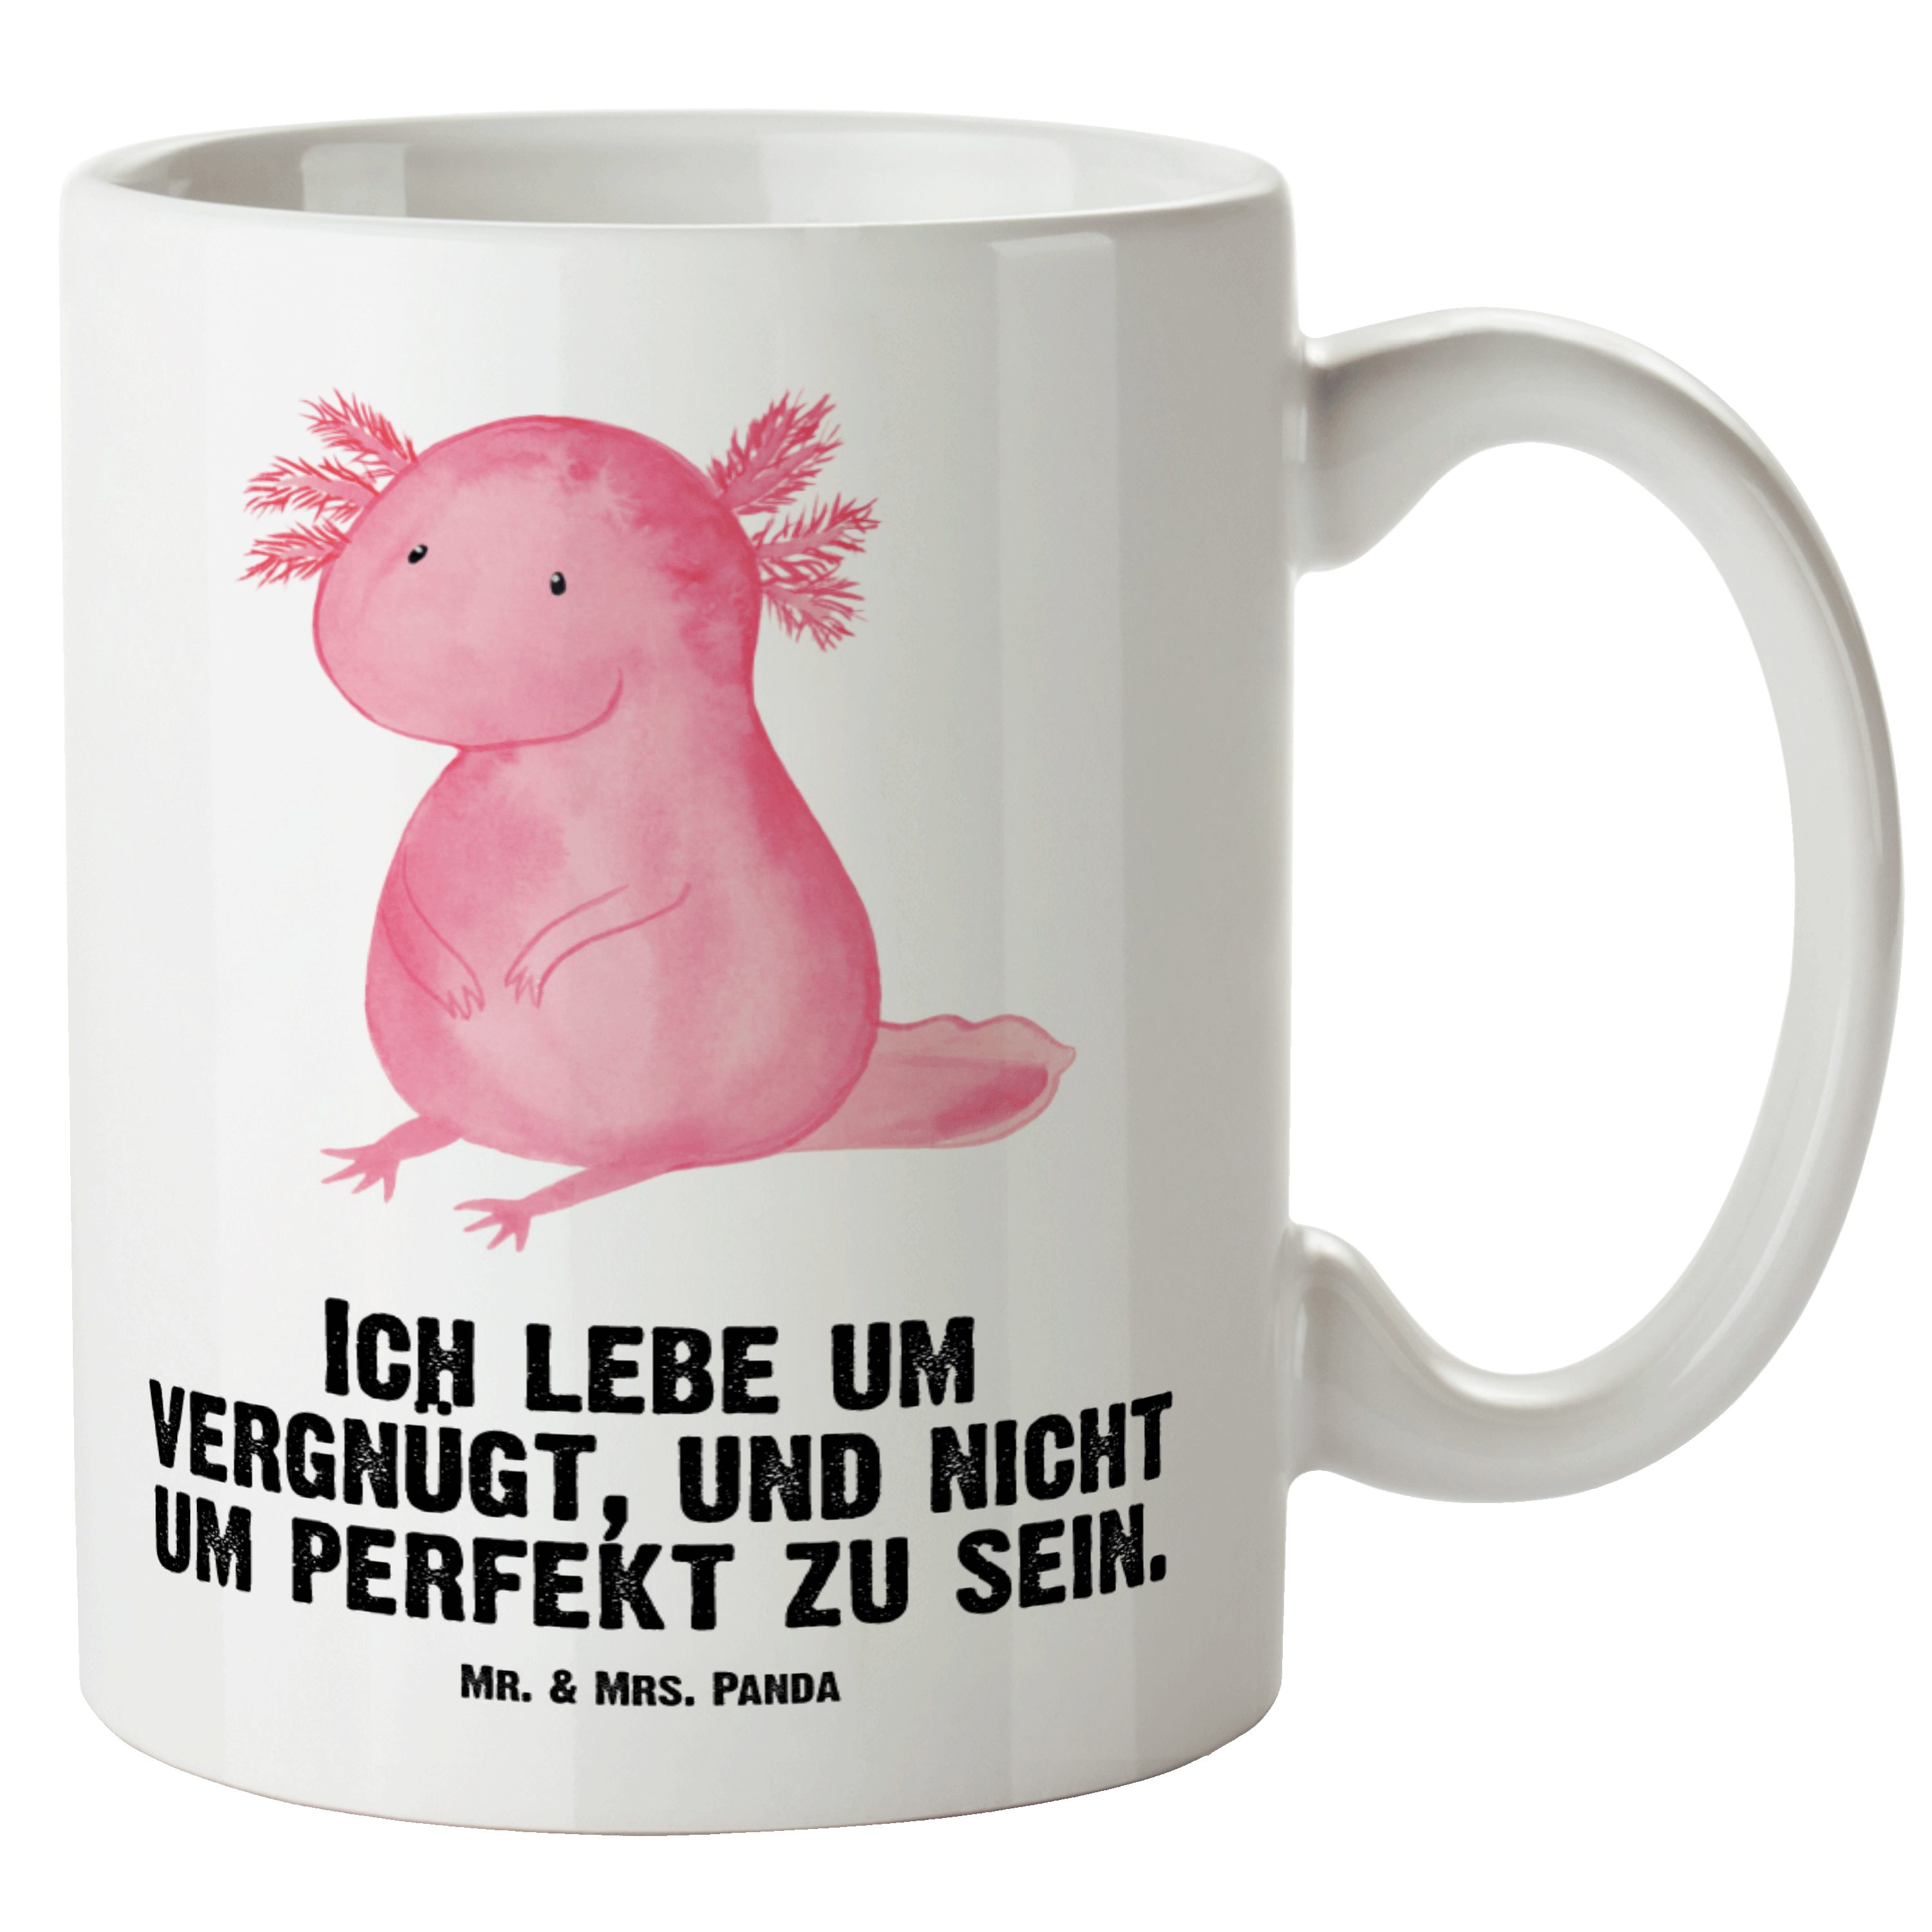 Mr. & Mrs. Panda Tasse Axolotl - Weiß - Geschenk, Weisheit, spülmaschinenfest, XL Tasse, Leb, XL Tasse Keramik